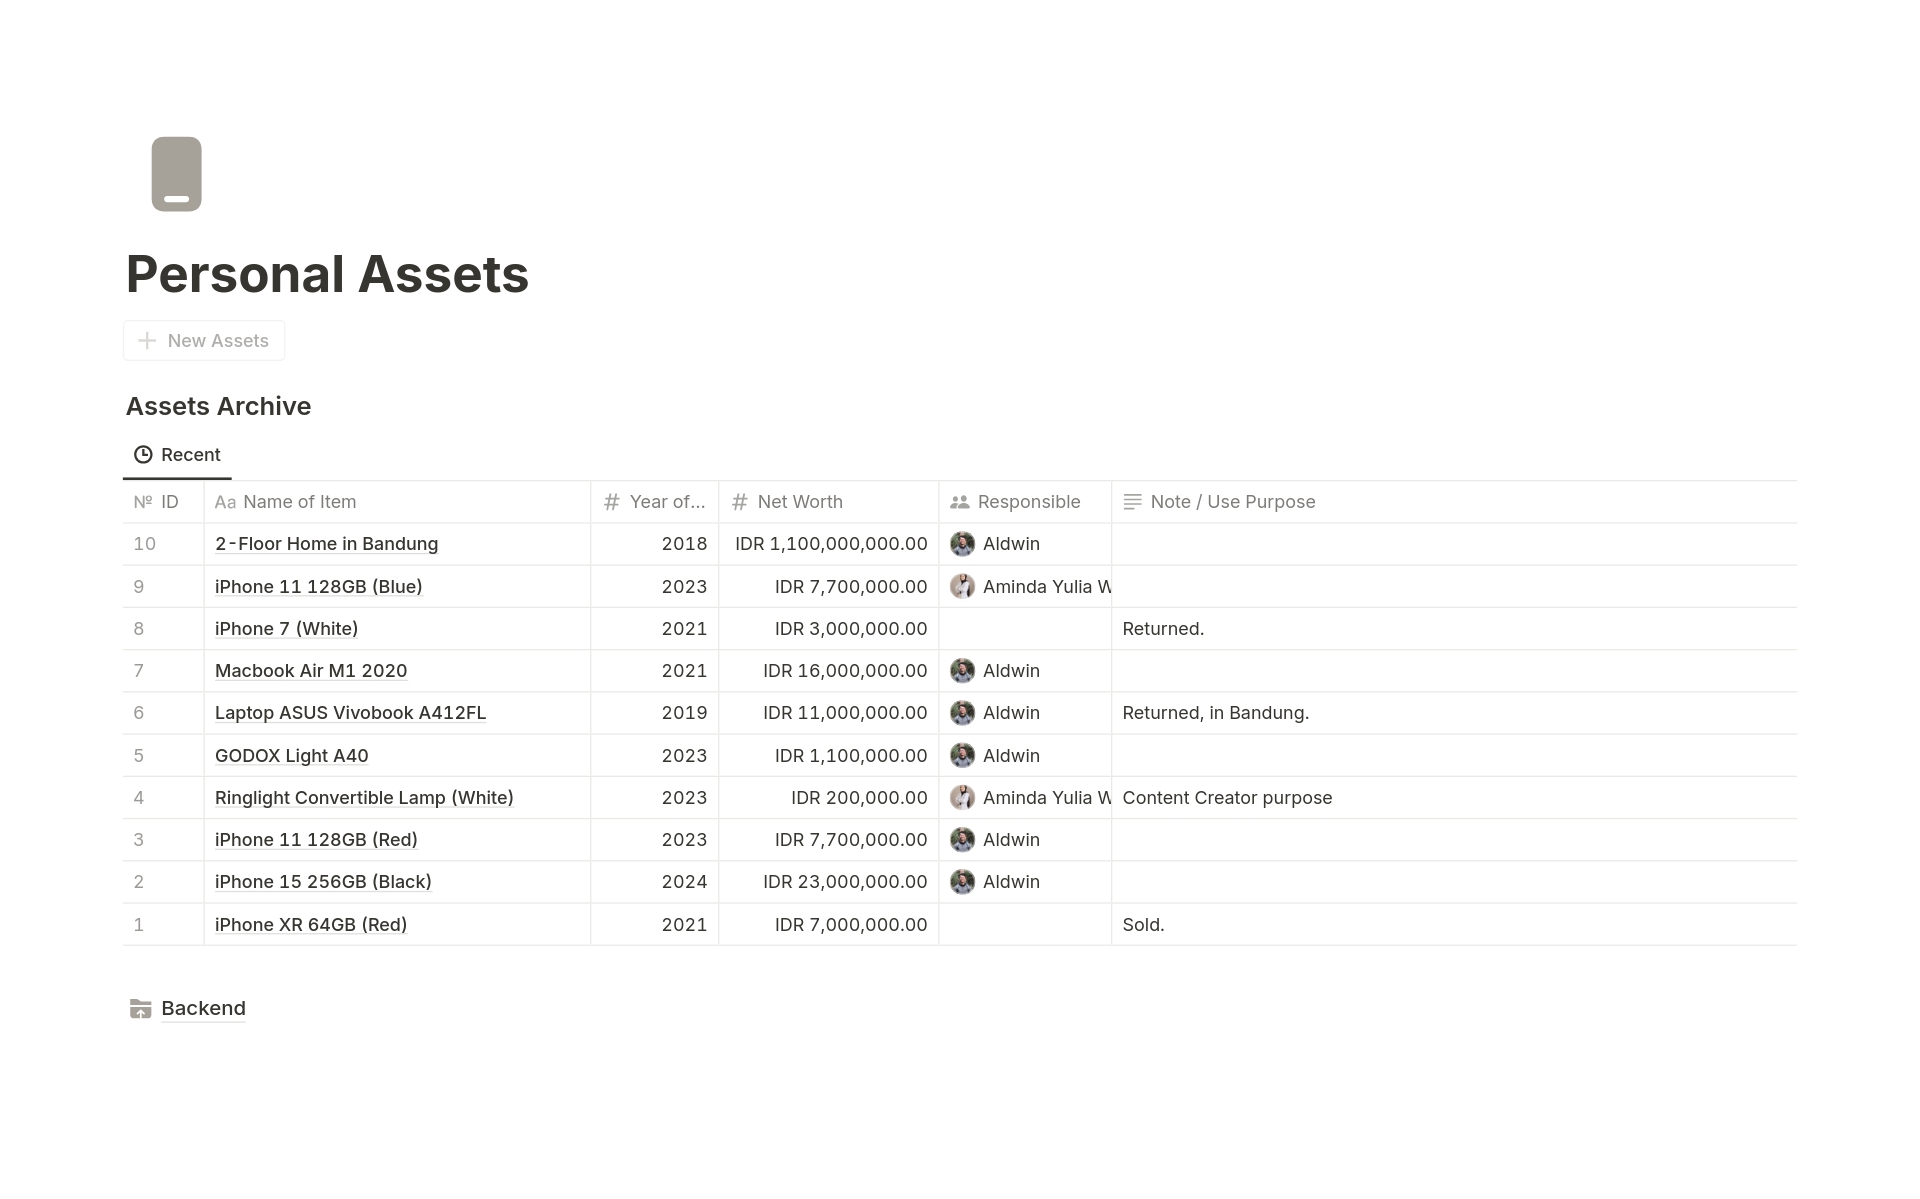 Vista previa de una plantilla para Personal Assets Tracker